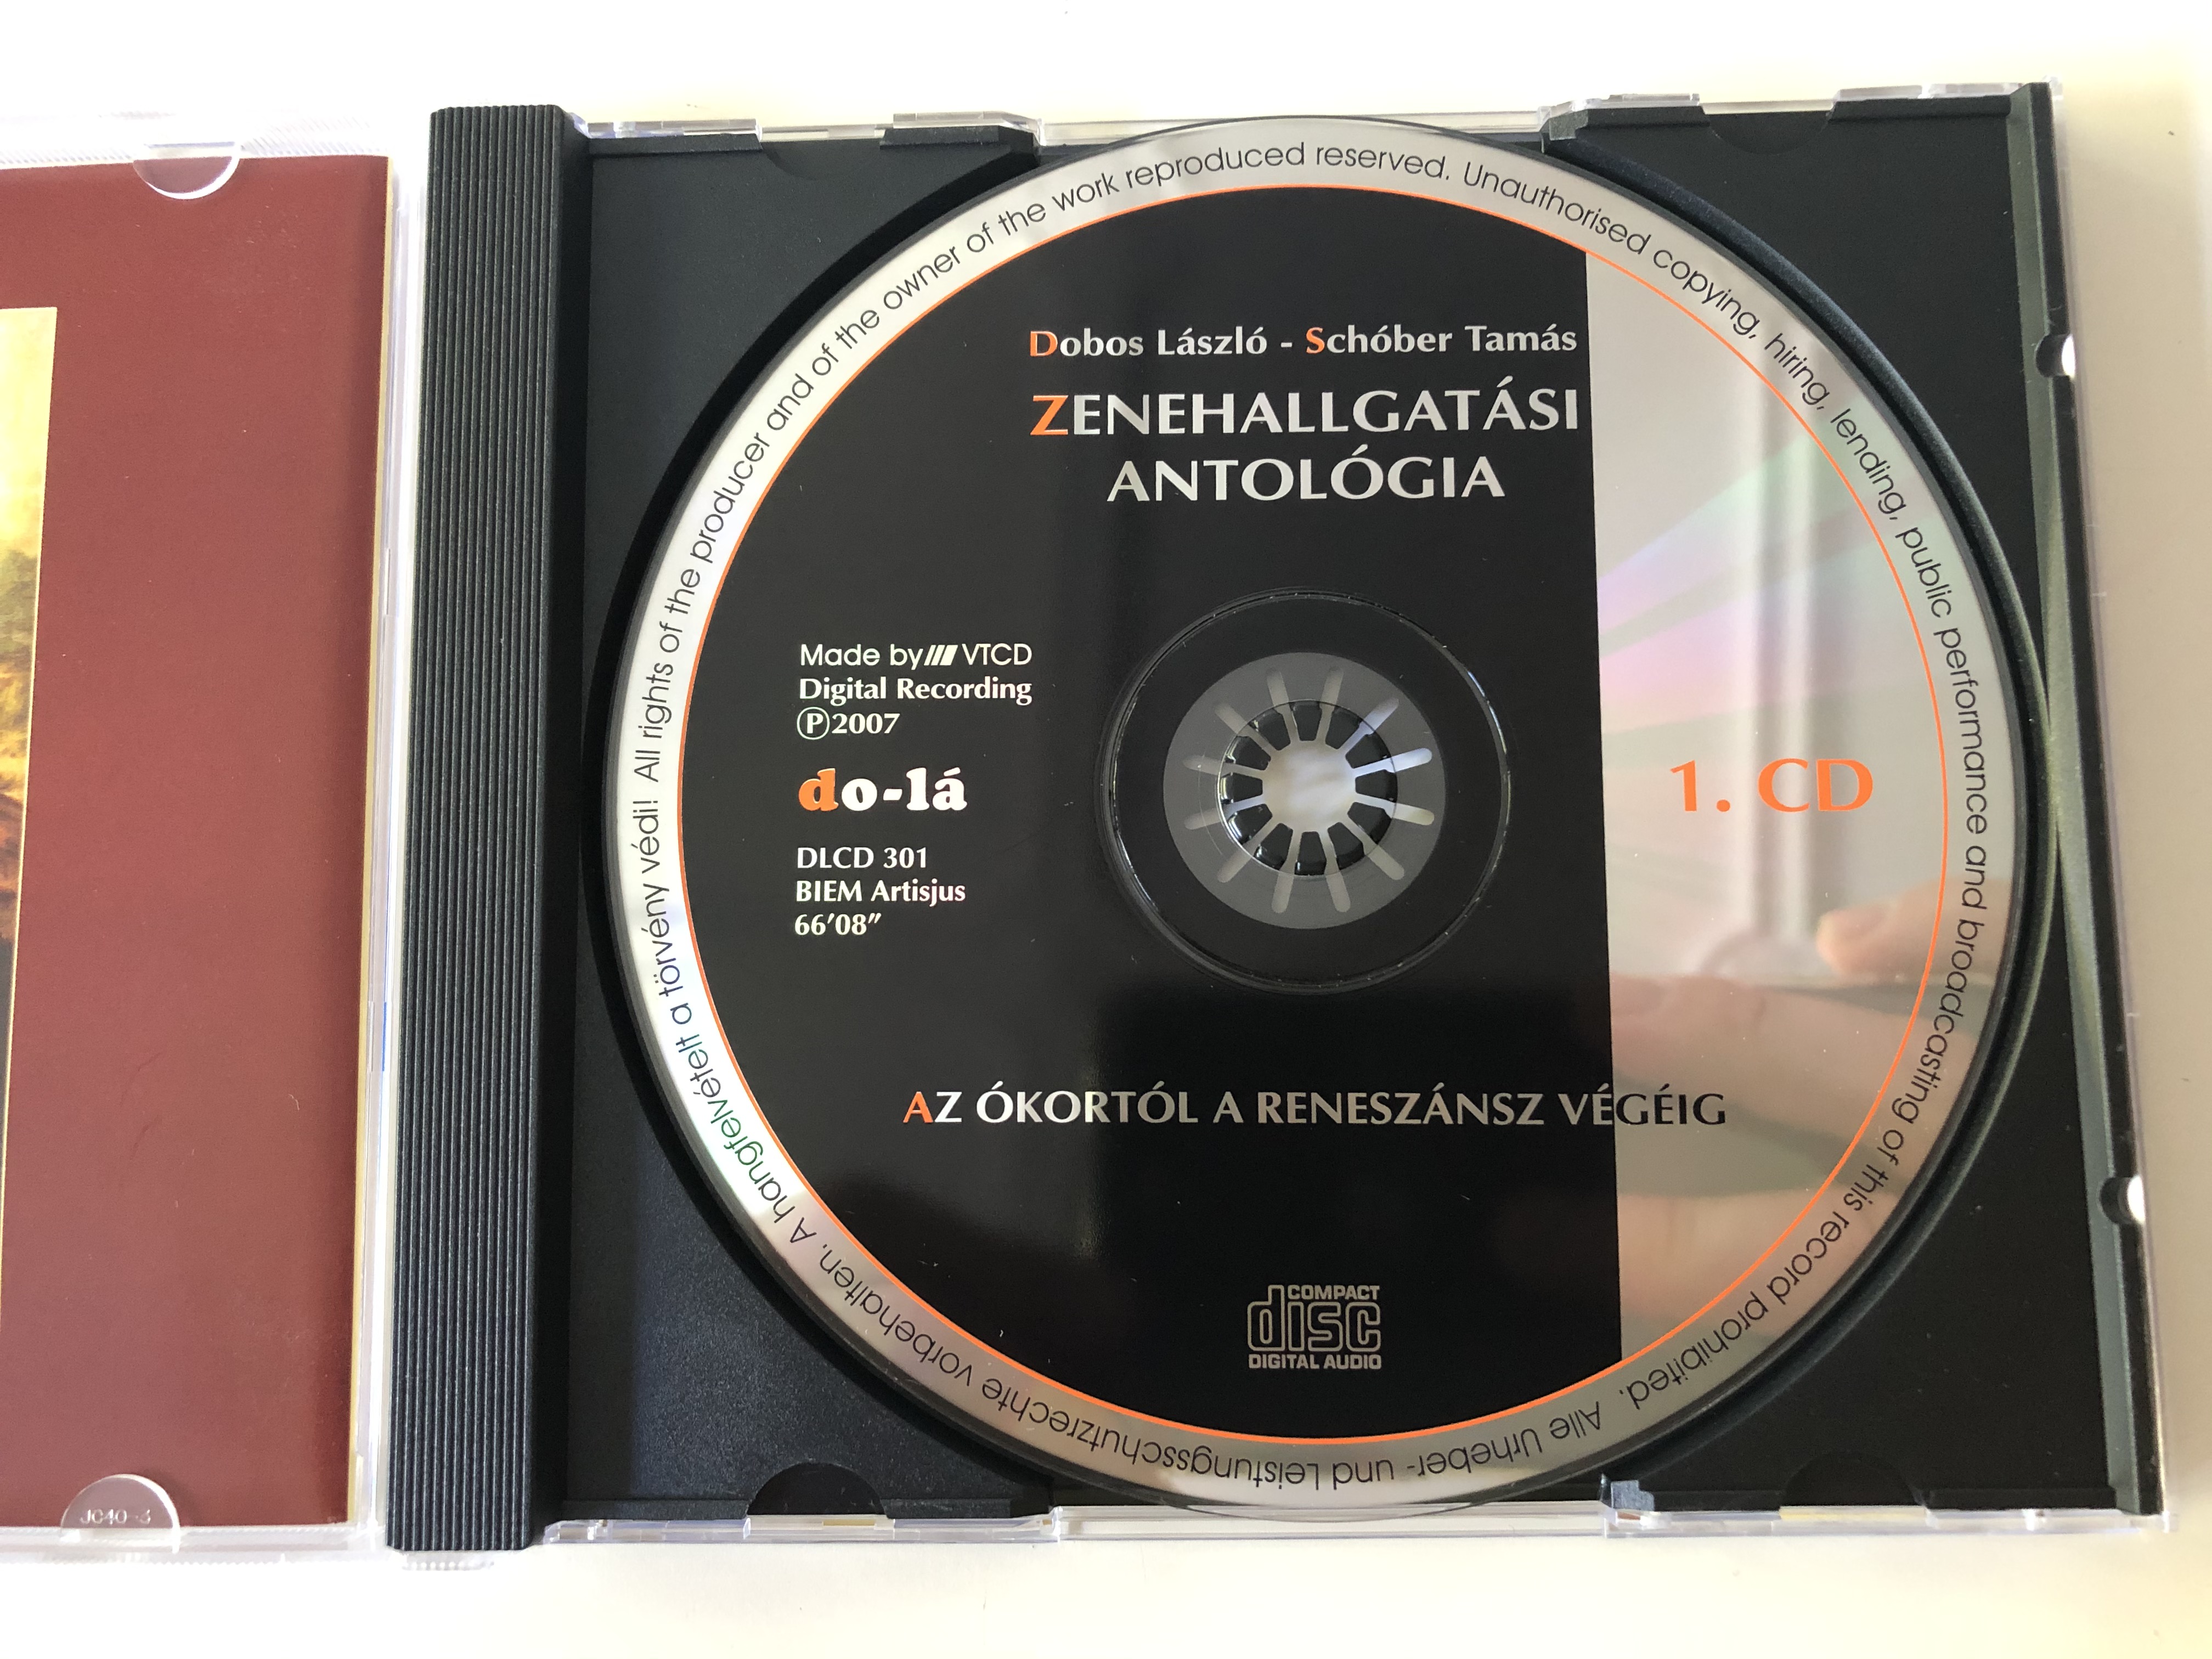 zenehallgat-si-antologia-1.-az-okortol-a-reneszansz-vegeig-do-la-audio-cd-2007-dlcd-301-5-.jpg